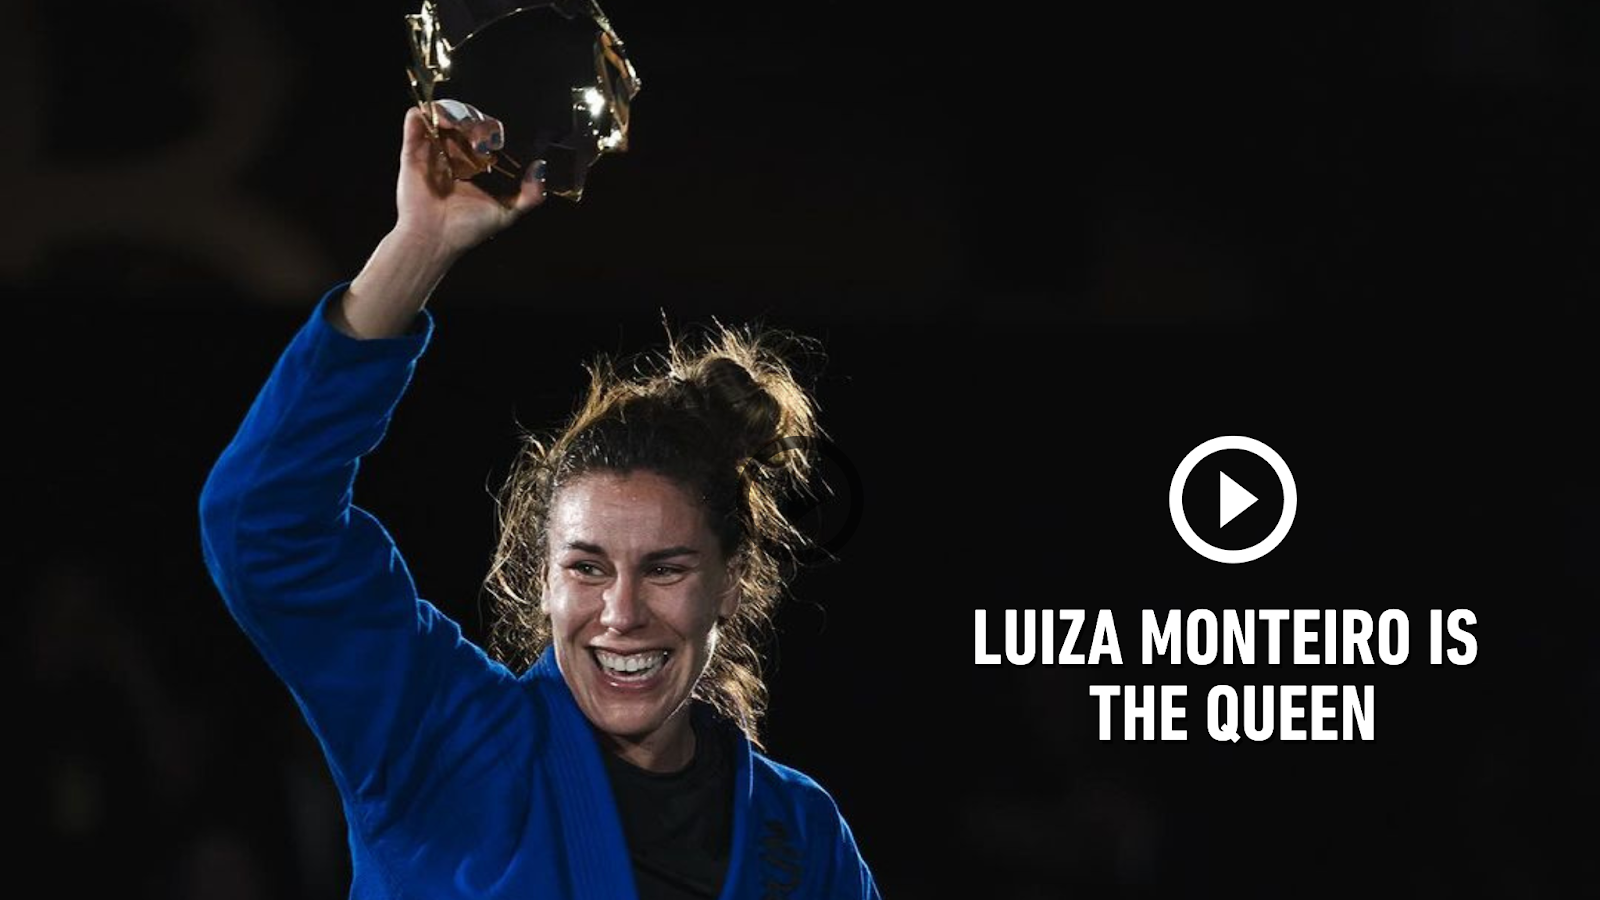 Luiza Monteiro is the Queen